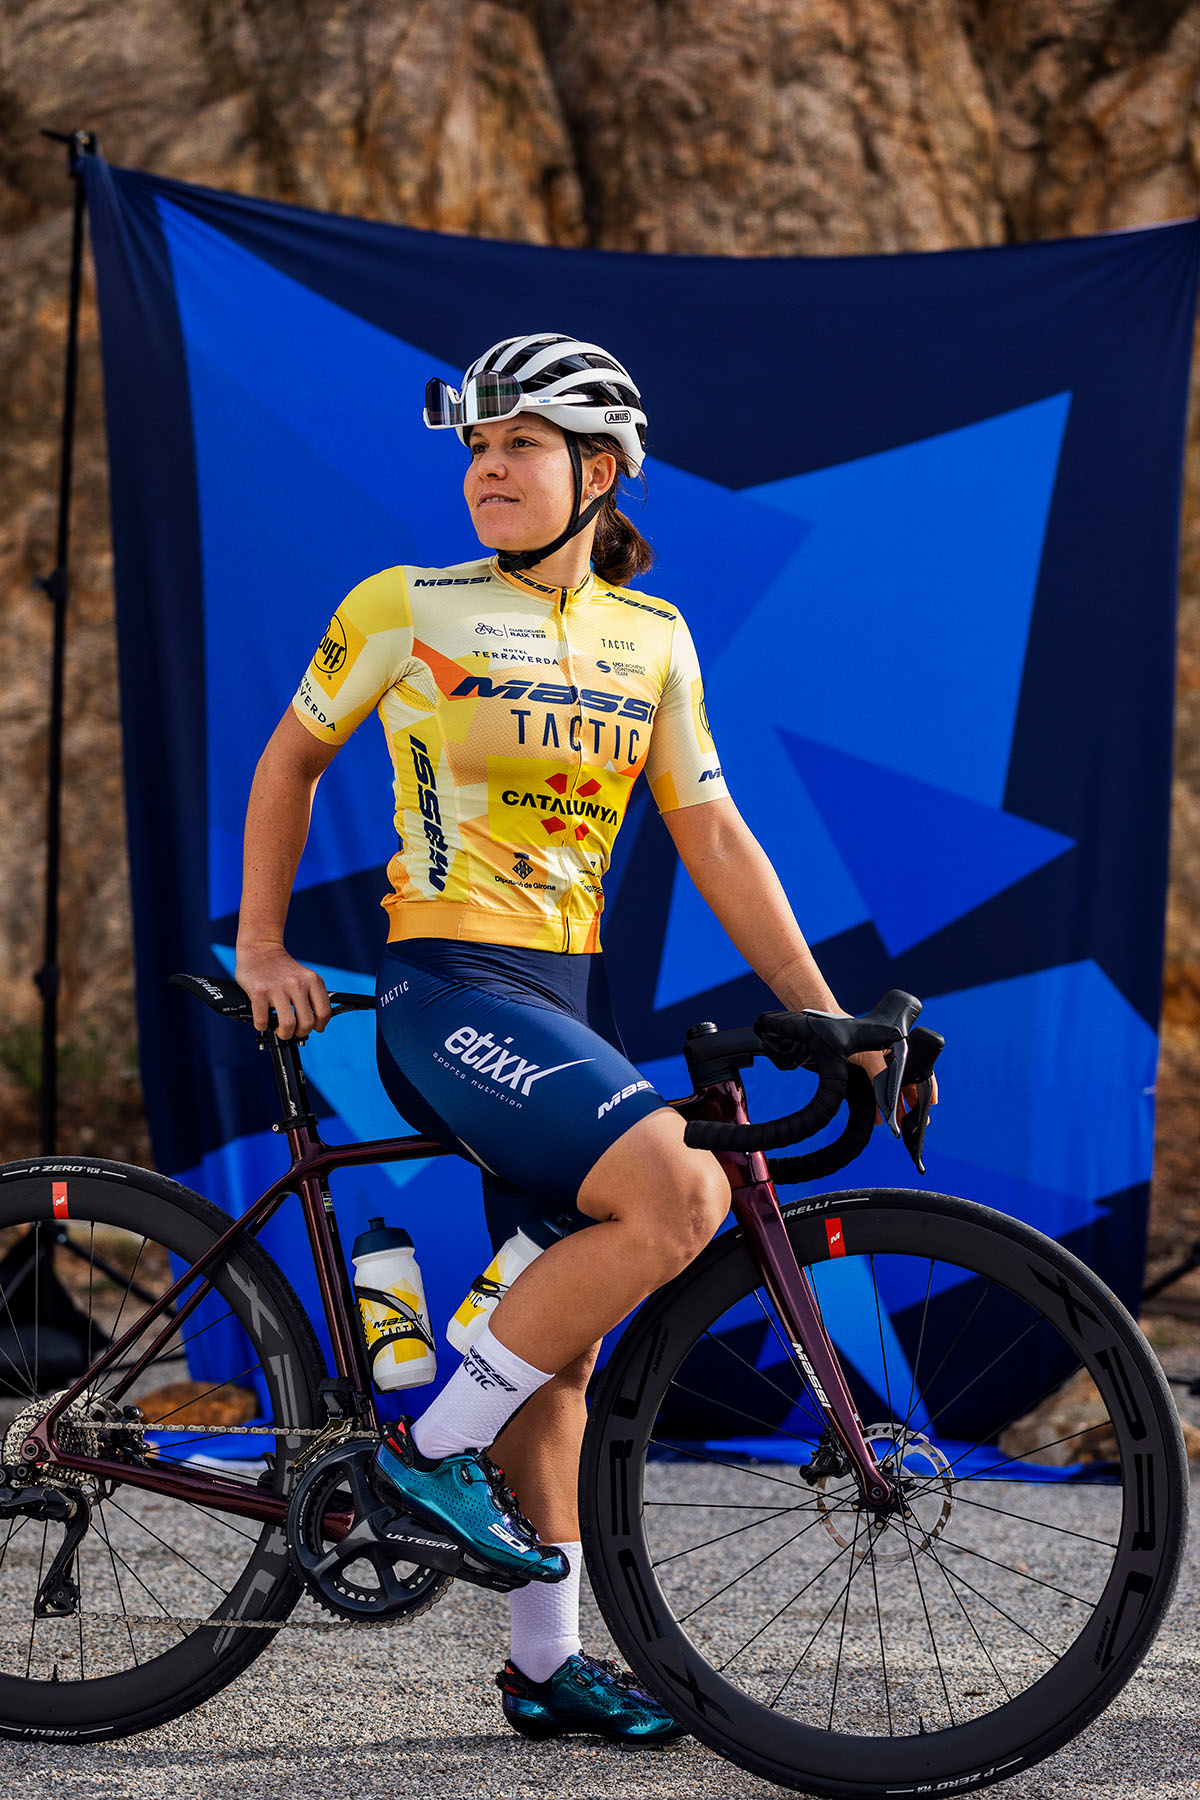 La nueva equipación 2023 del equipo ciclista femenino Massi-Tactic UCI